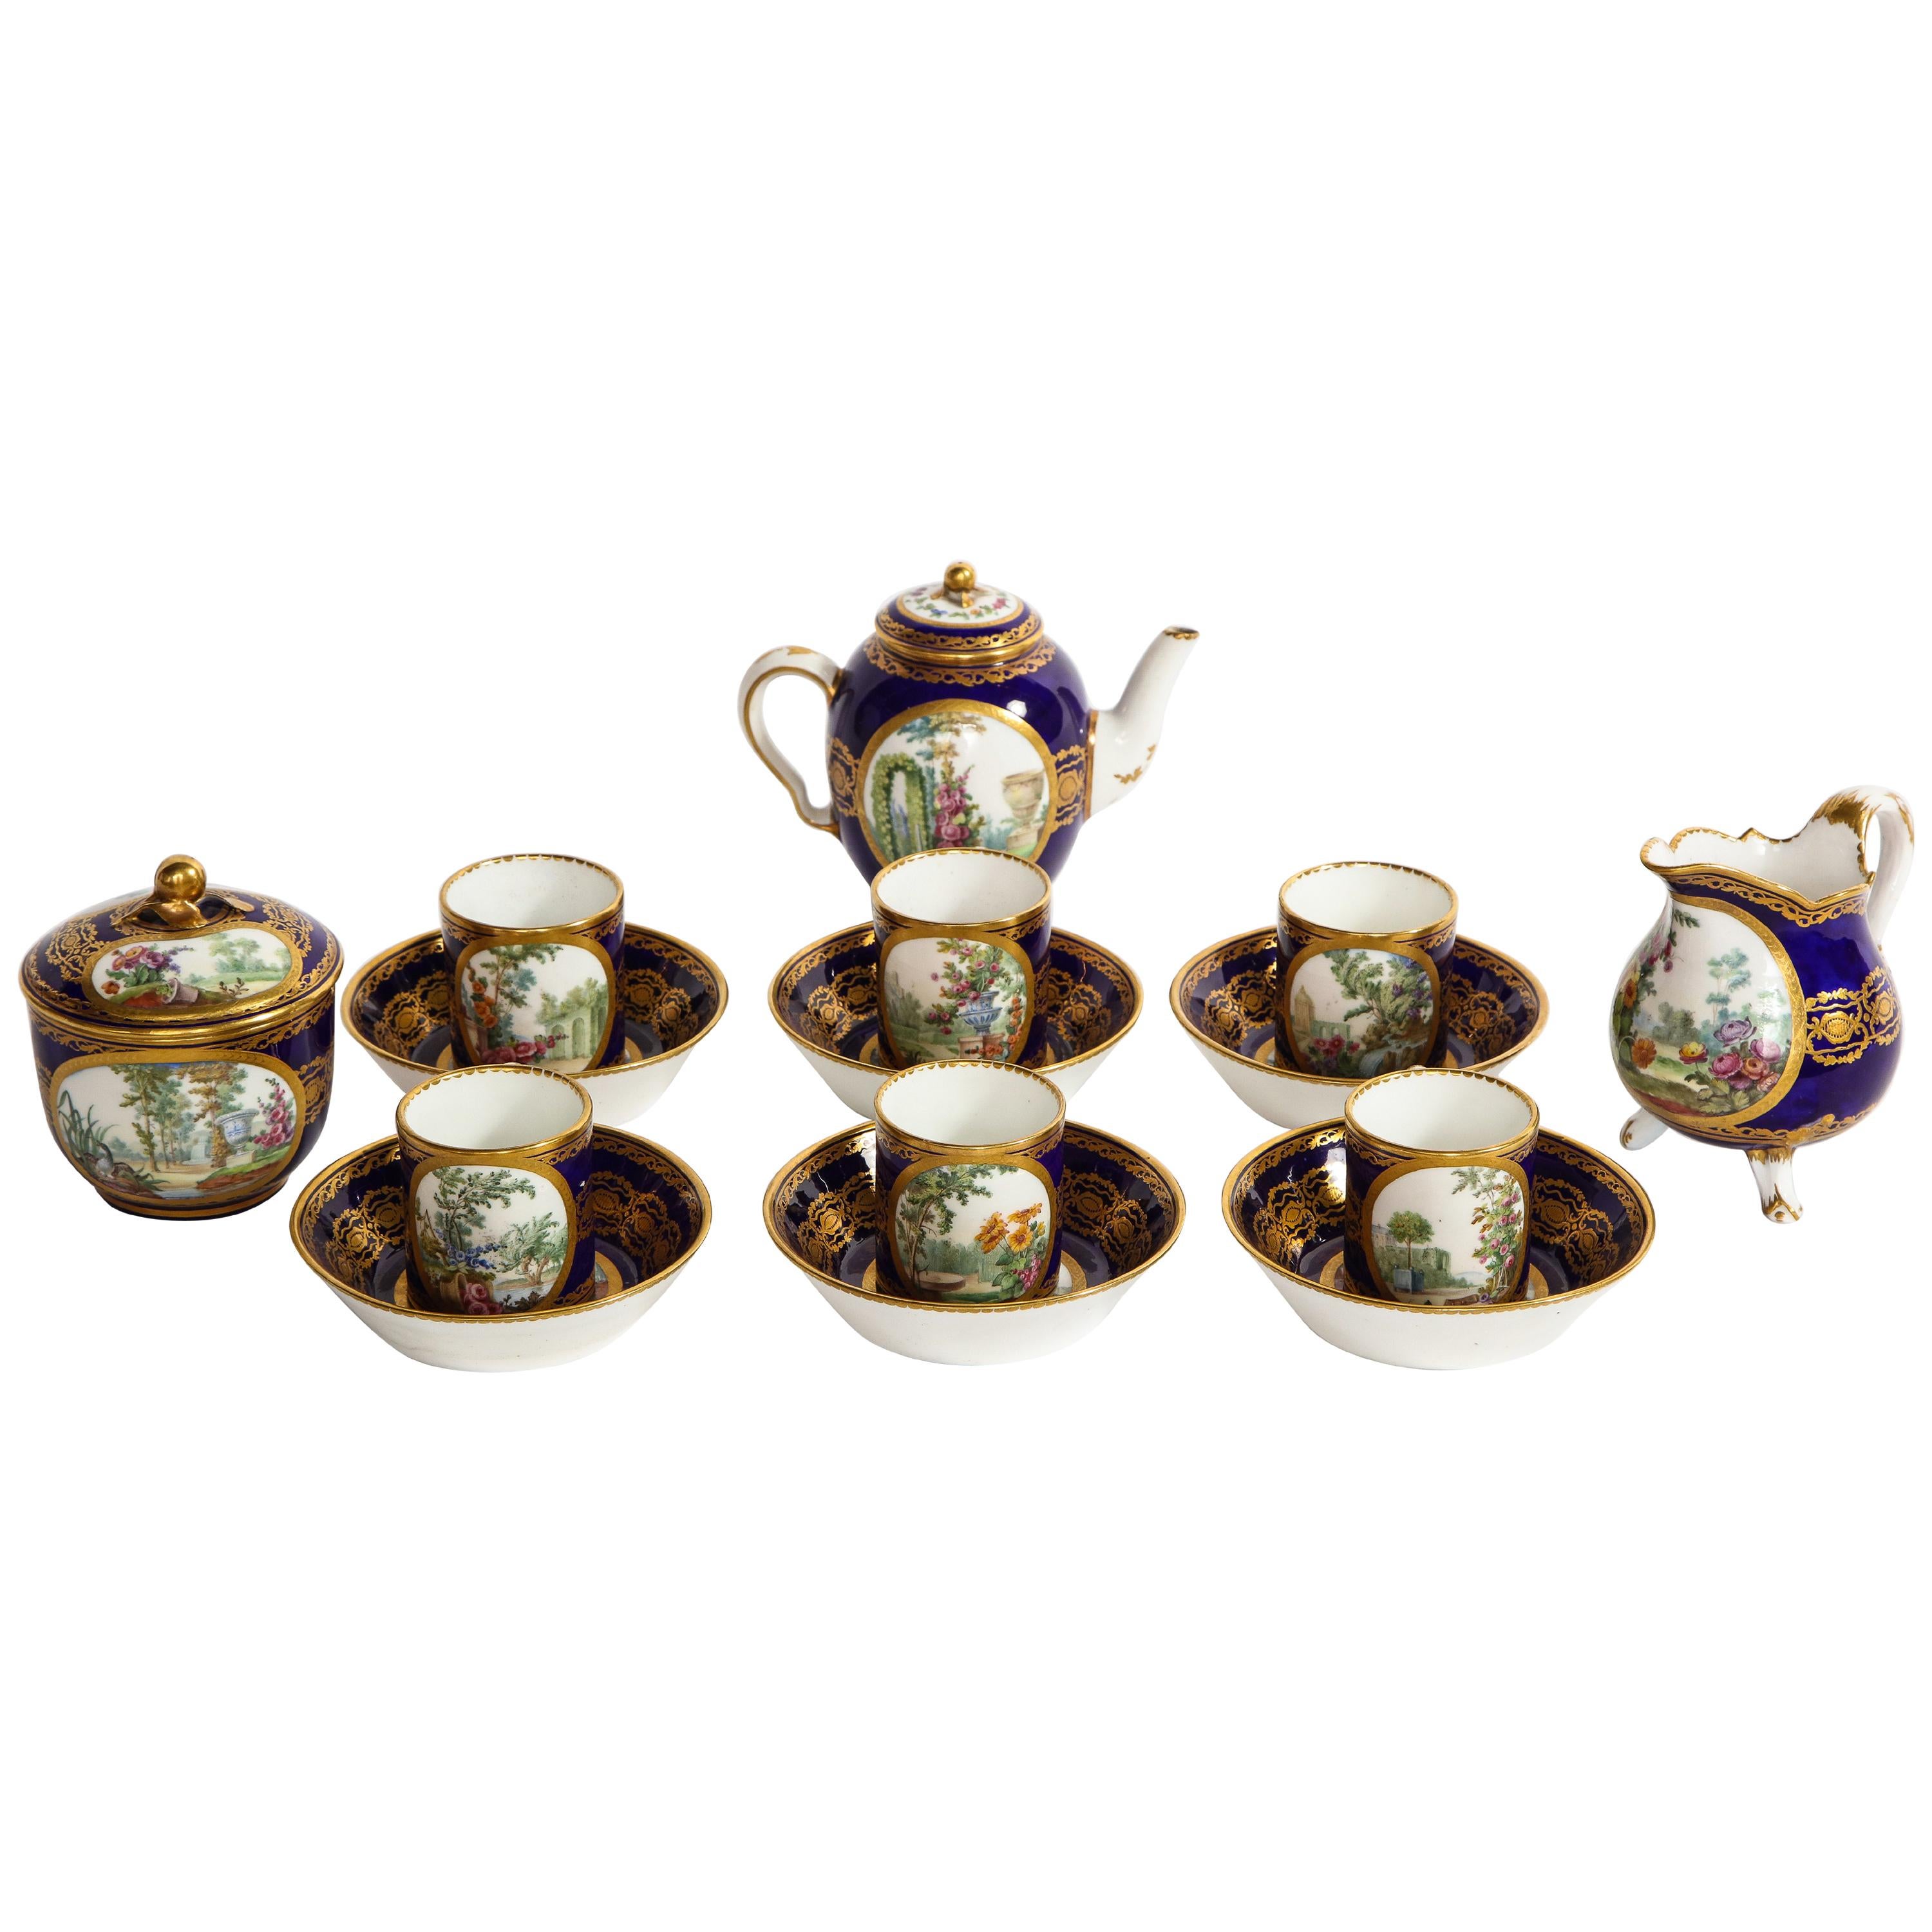 Service à thé complet en porcelaine de Sèvres du XVIIIe siècle, avec marque de peintres et de guildes